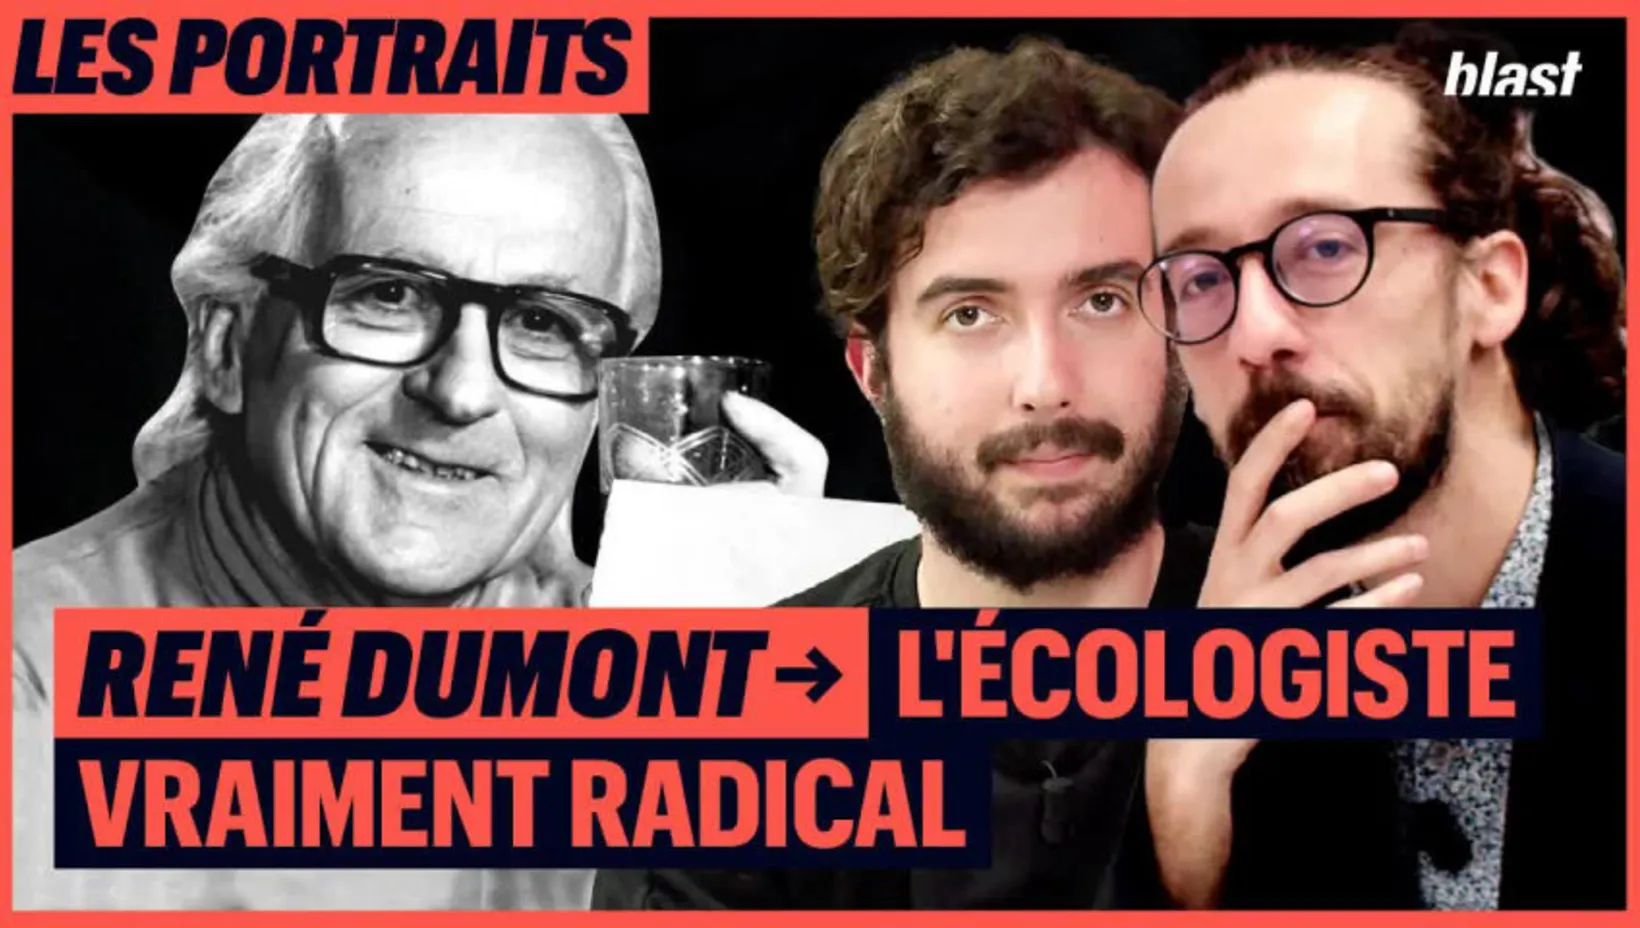 René Dumont : l'écologiste vraiment radical